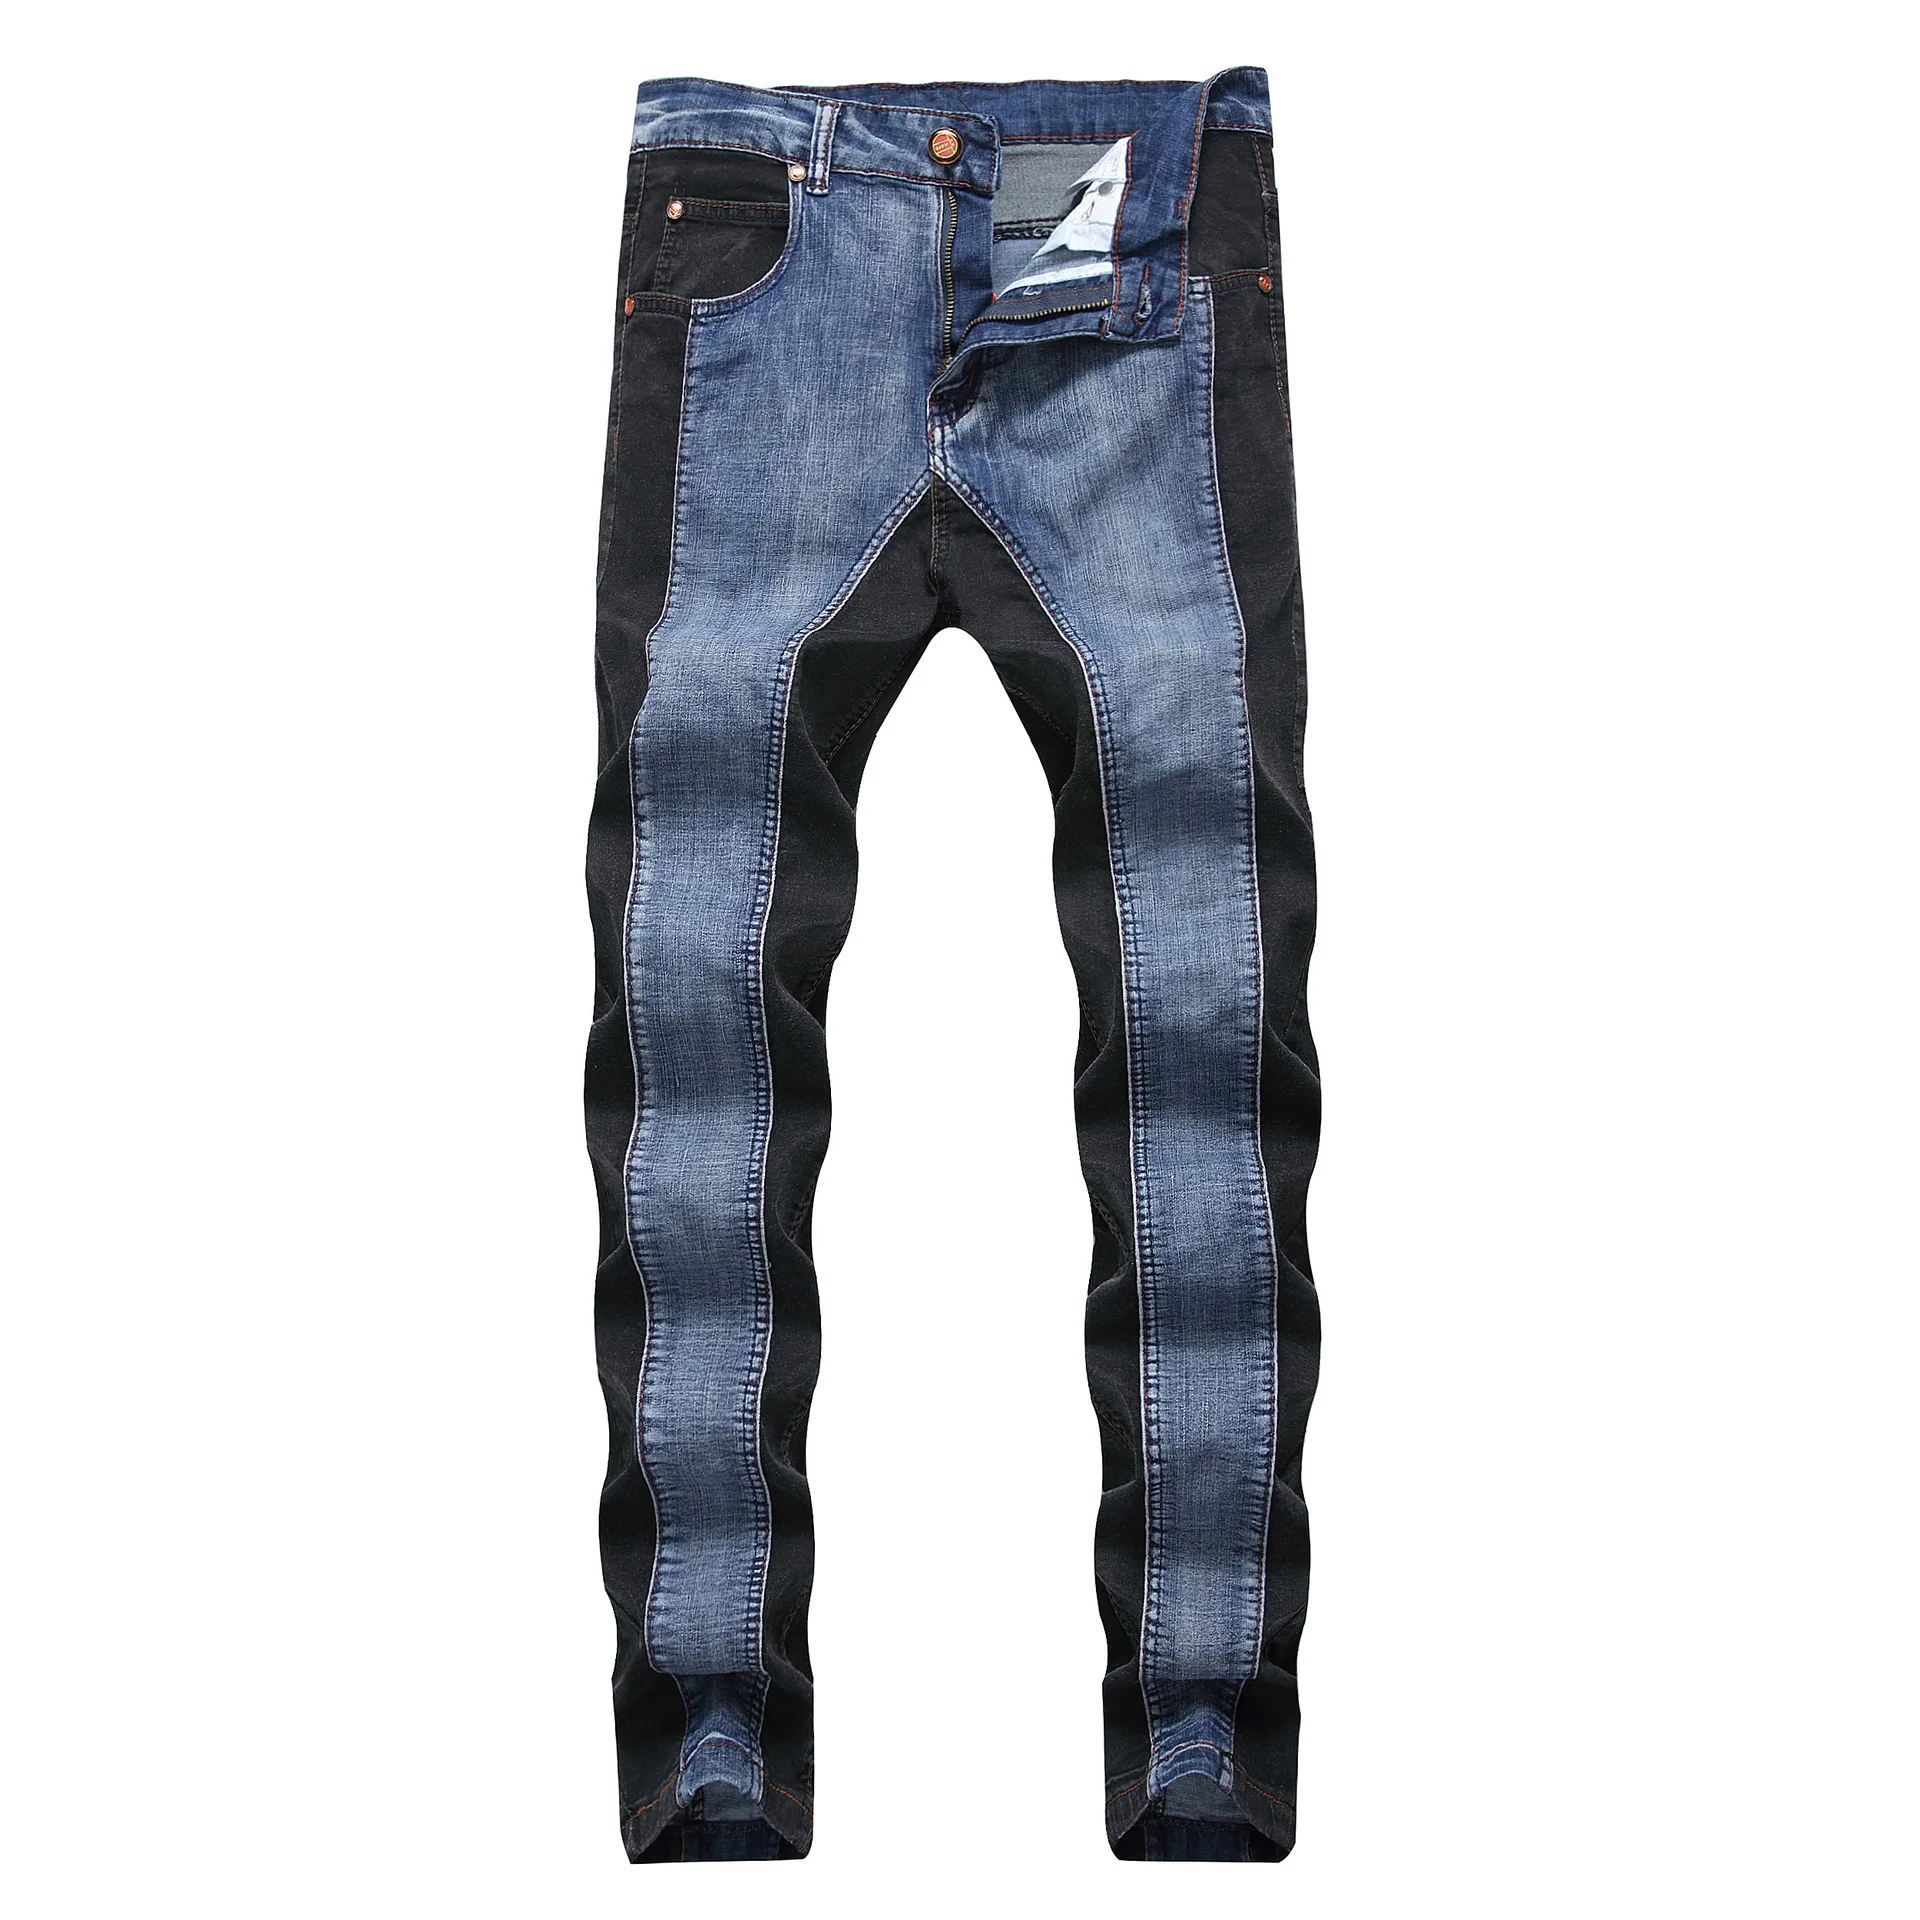 2018 Для мужчин s Harajuku в полоску джинсы Повседневное Байкер Тонкий прямые брюки Для мужчин синий дизайнер сращивания джинсы Большой размер 40